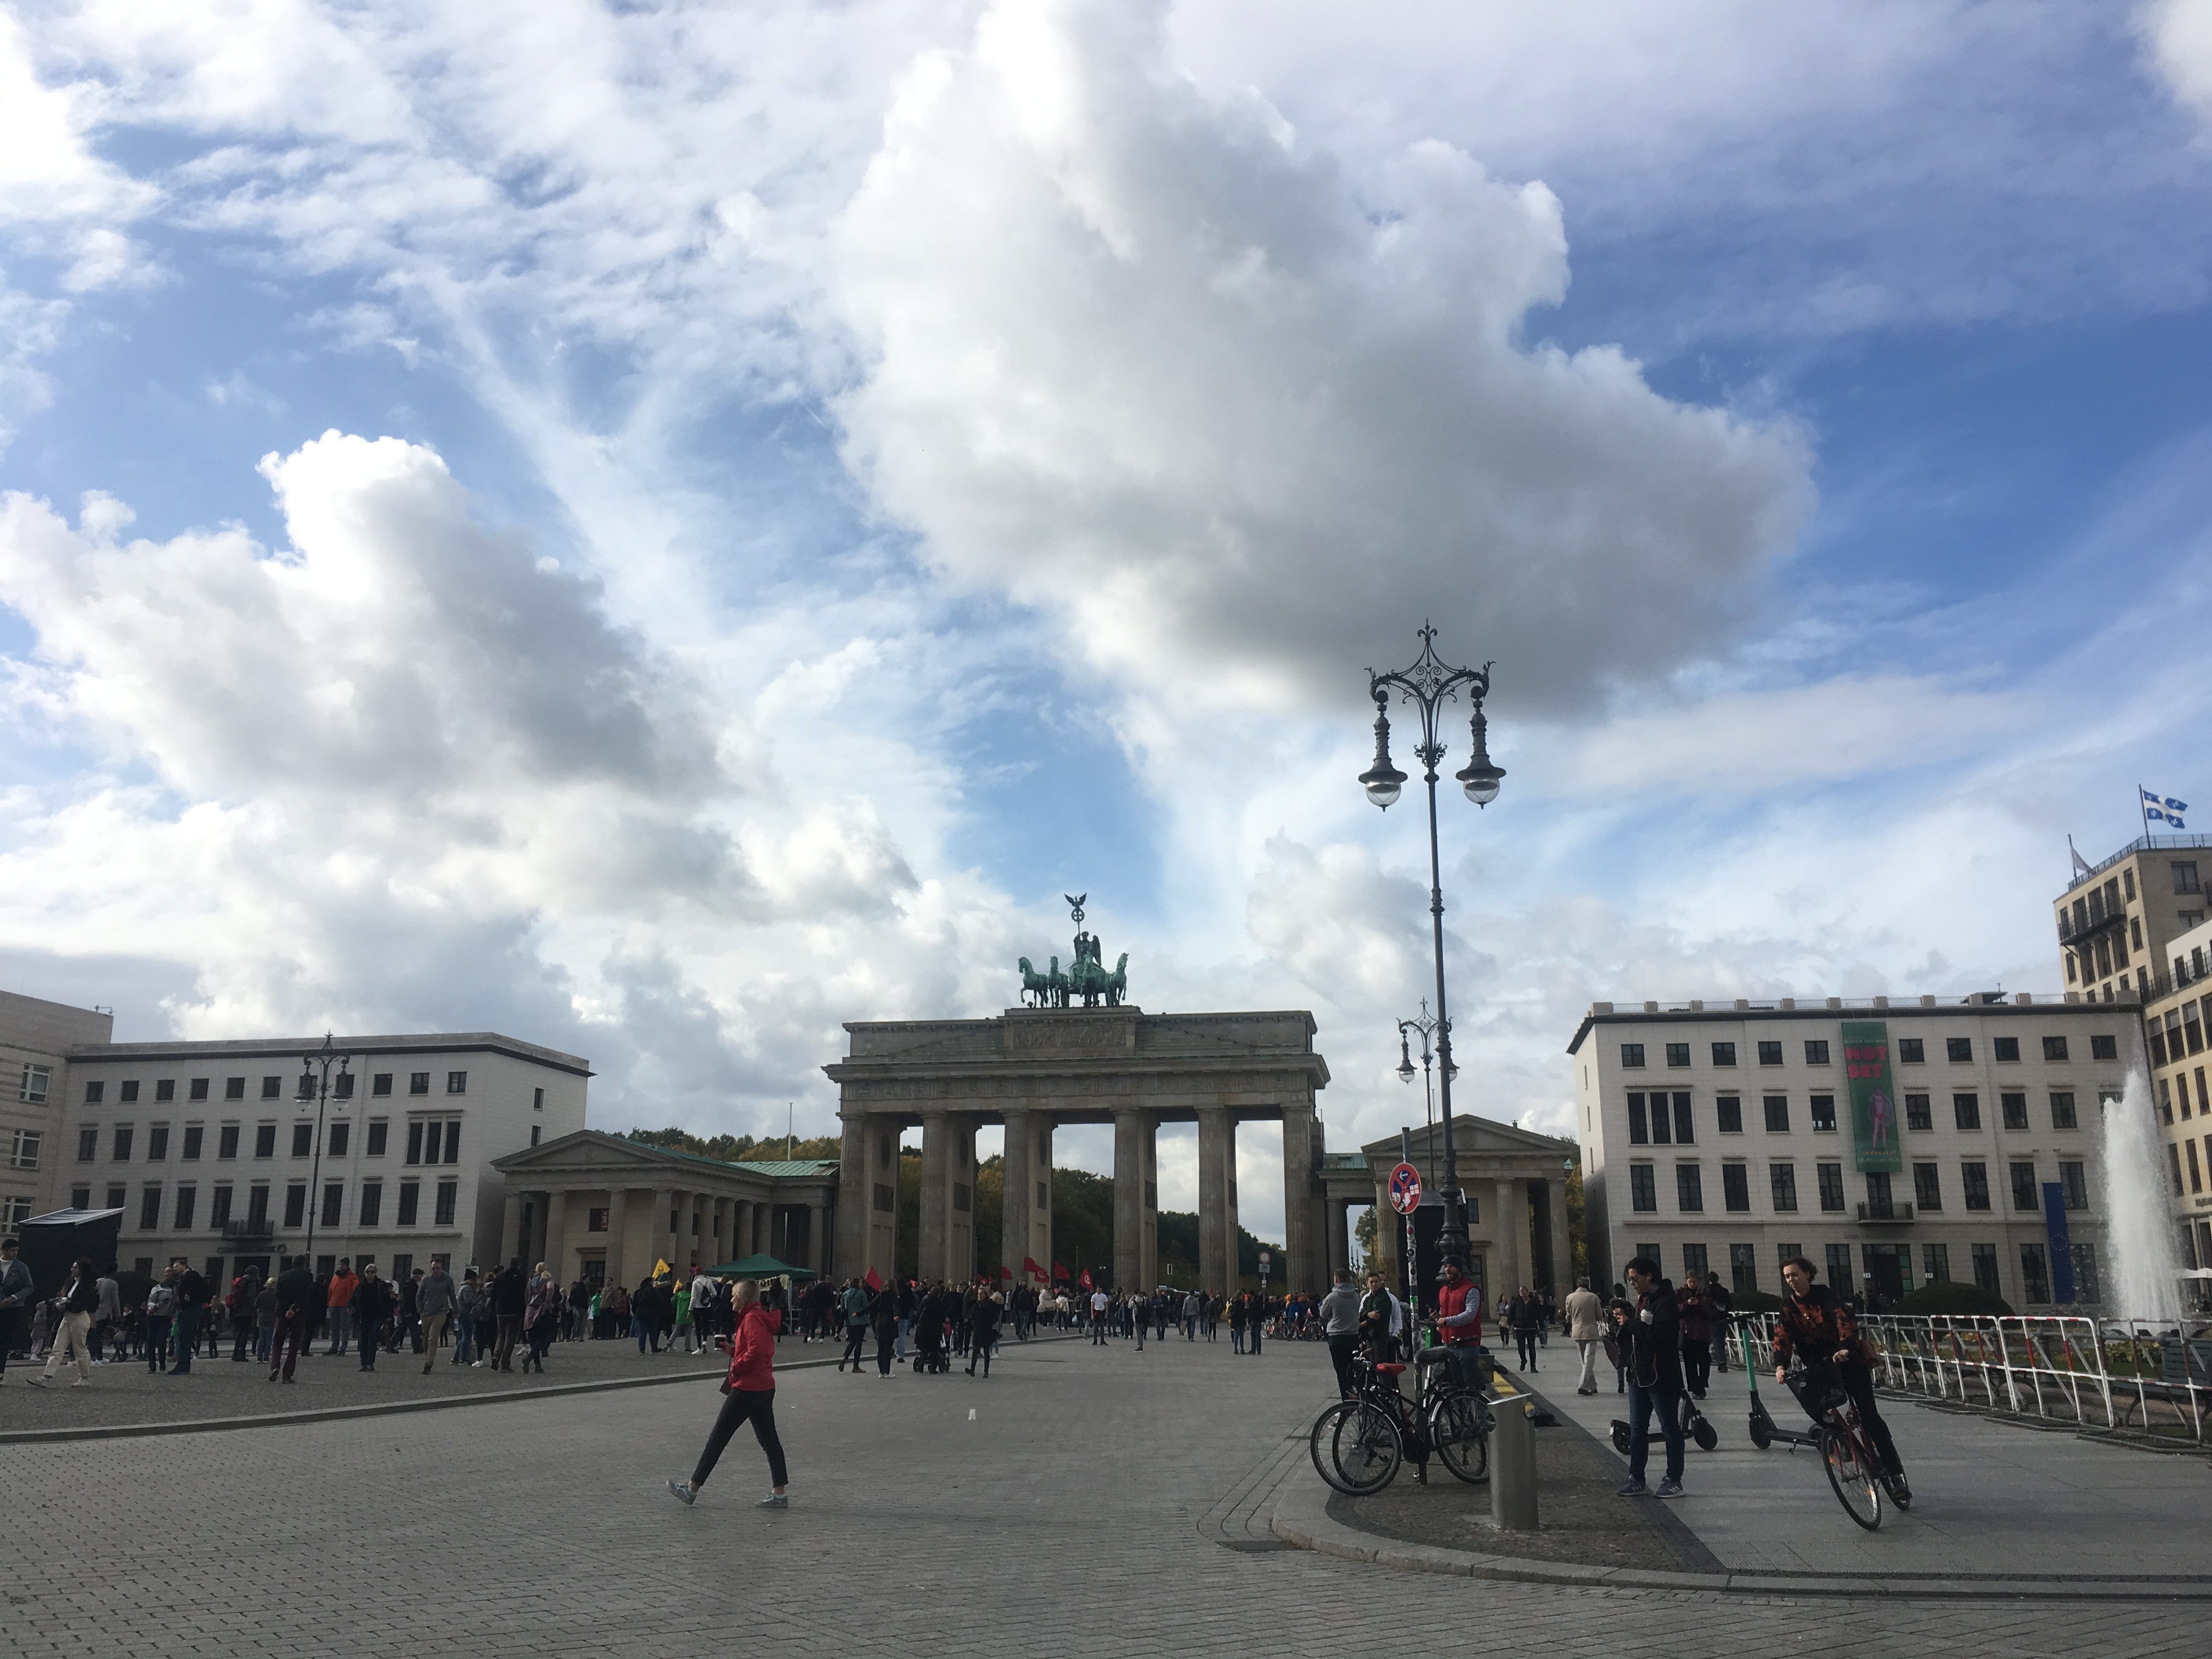 First glimpse of Brandenburg Gate